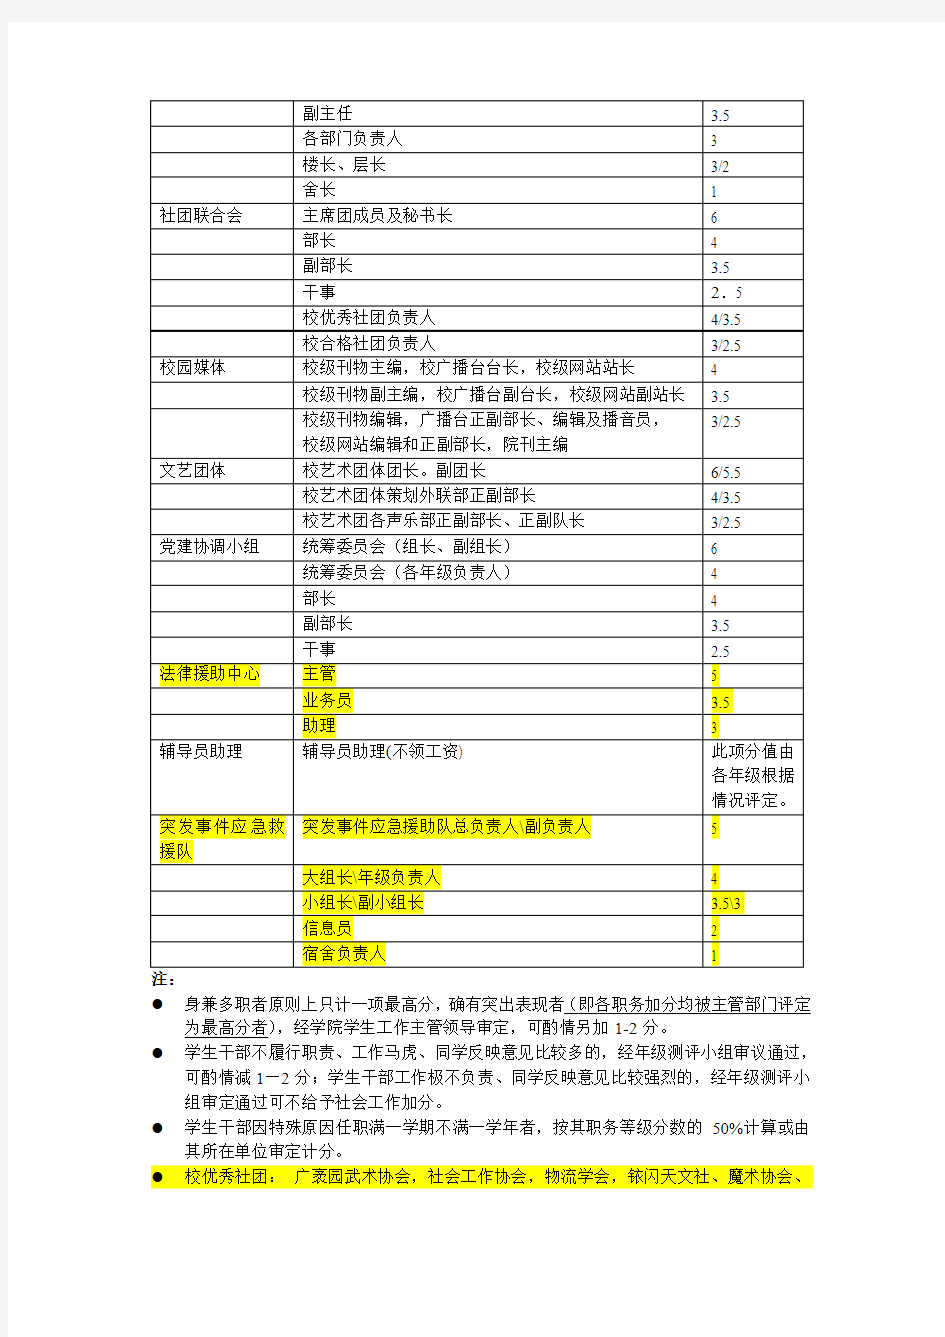 法学院本科学生综合素质测评细则【2011-2012年版(正式版)】